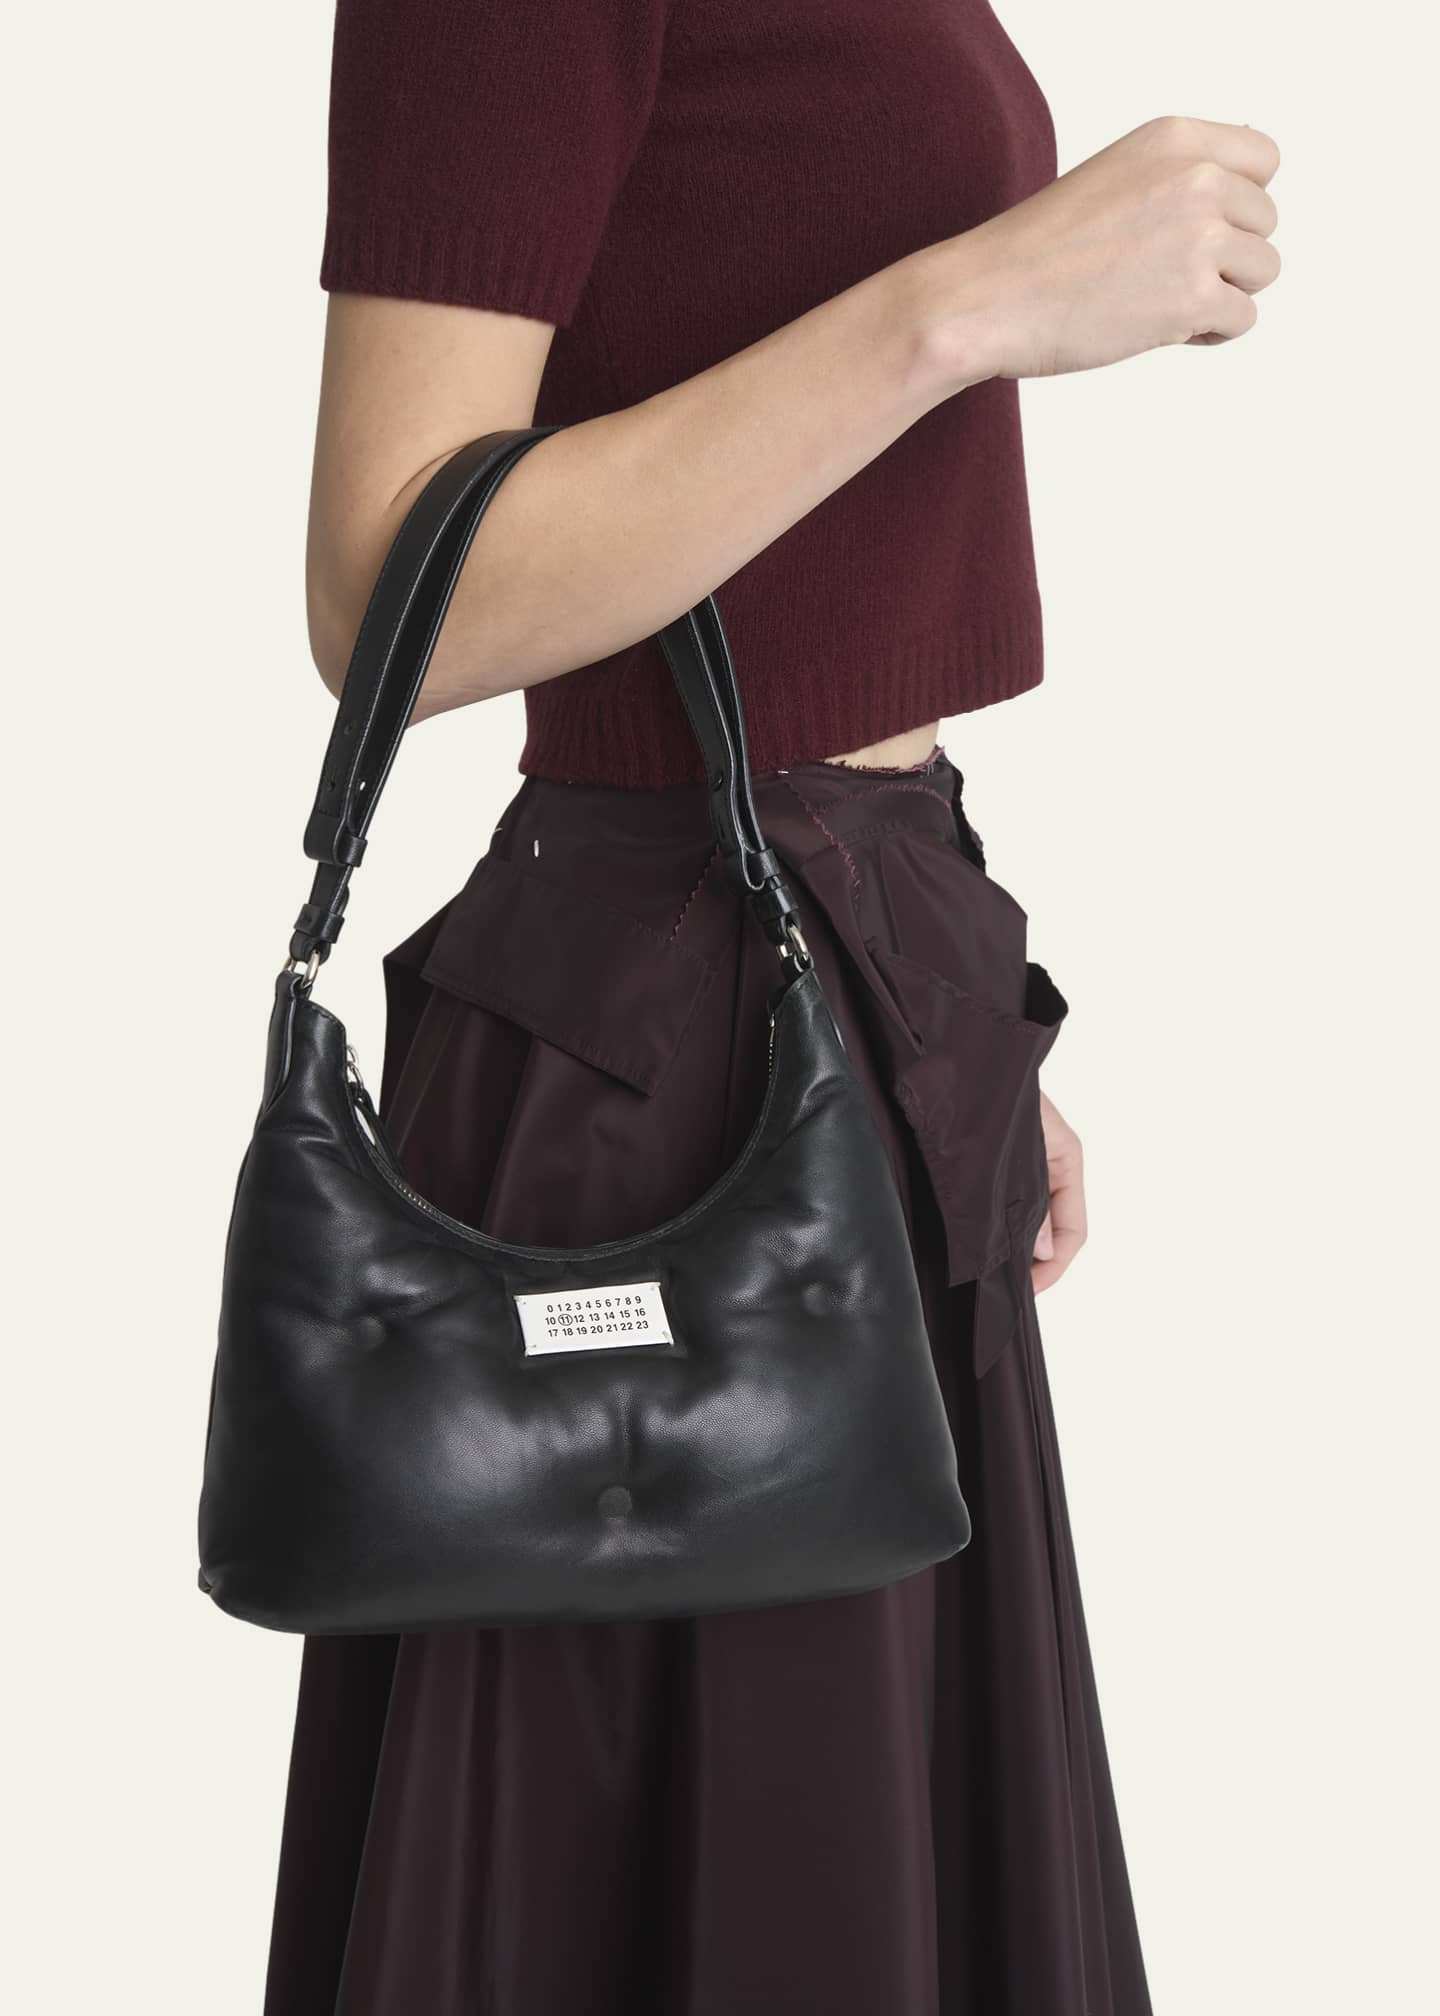 Maison Margiela Glam Slam Small Puffy Leather Shoulder Bag